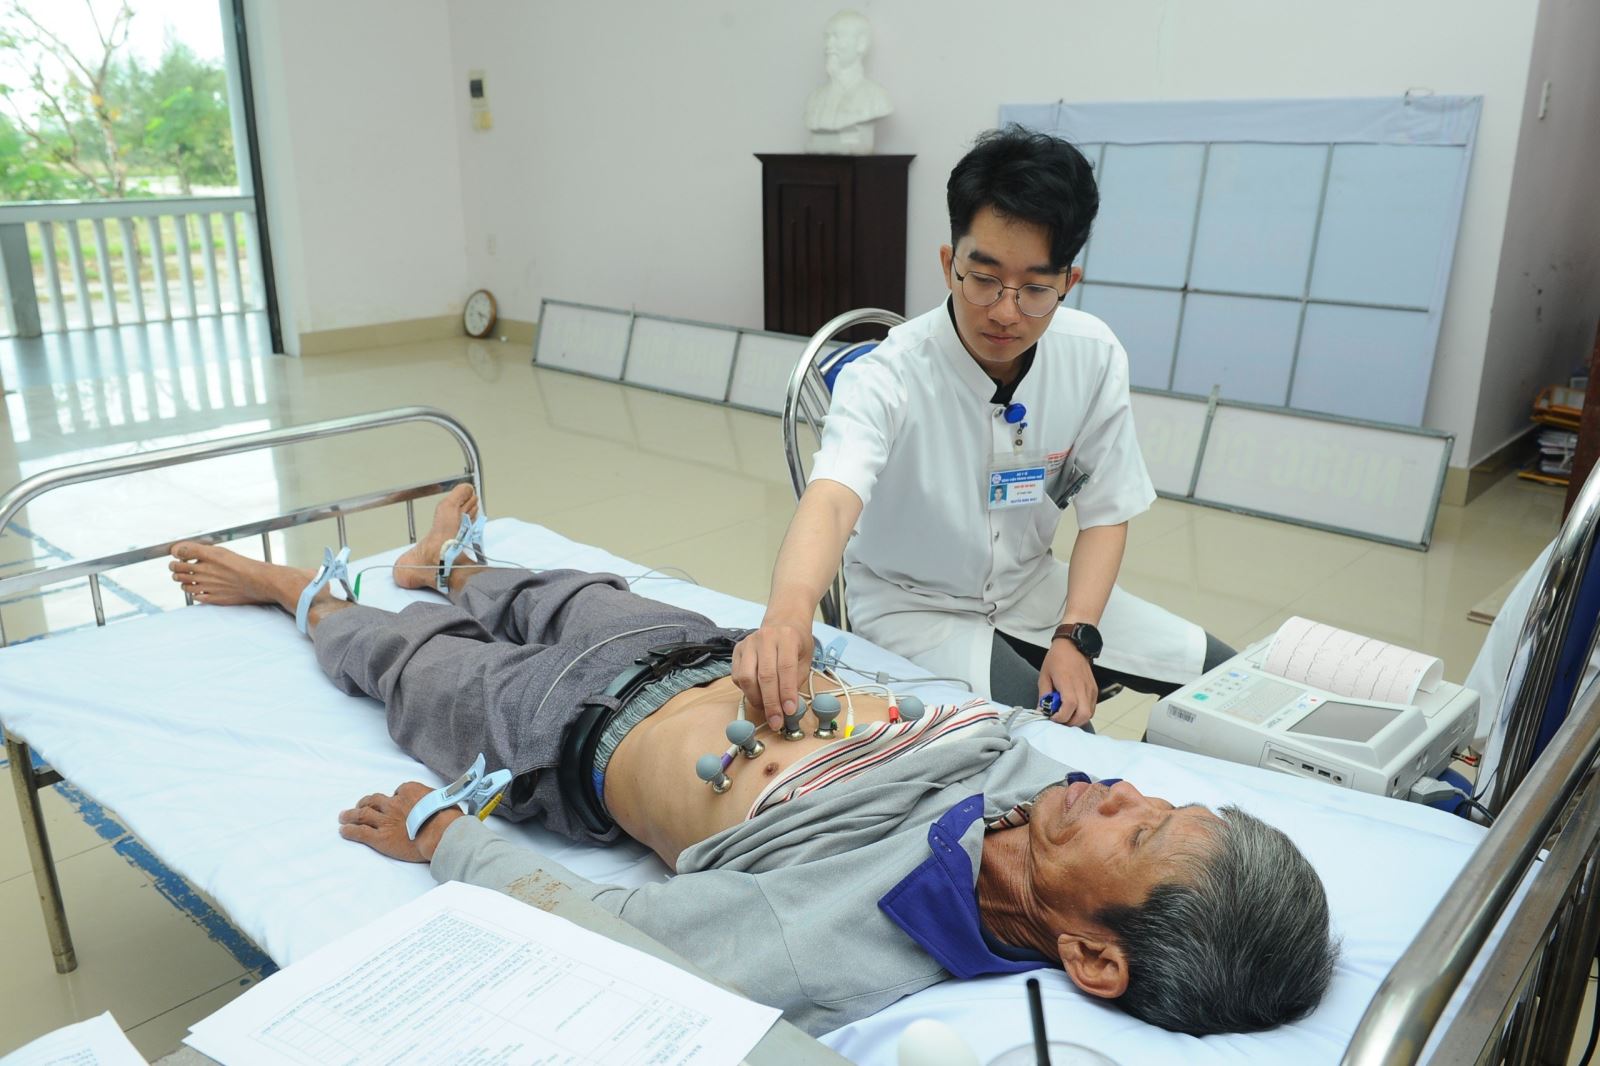 Đây là chương trình Tình nguyện mùa Đông, nằm trong khuôn khổ hoạt động “Chuyển đổi số vì sức khỏe phổi”.